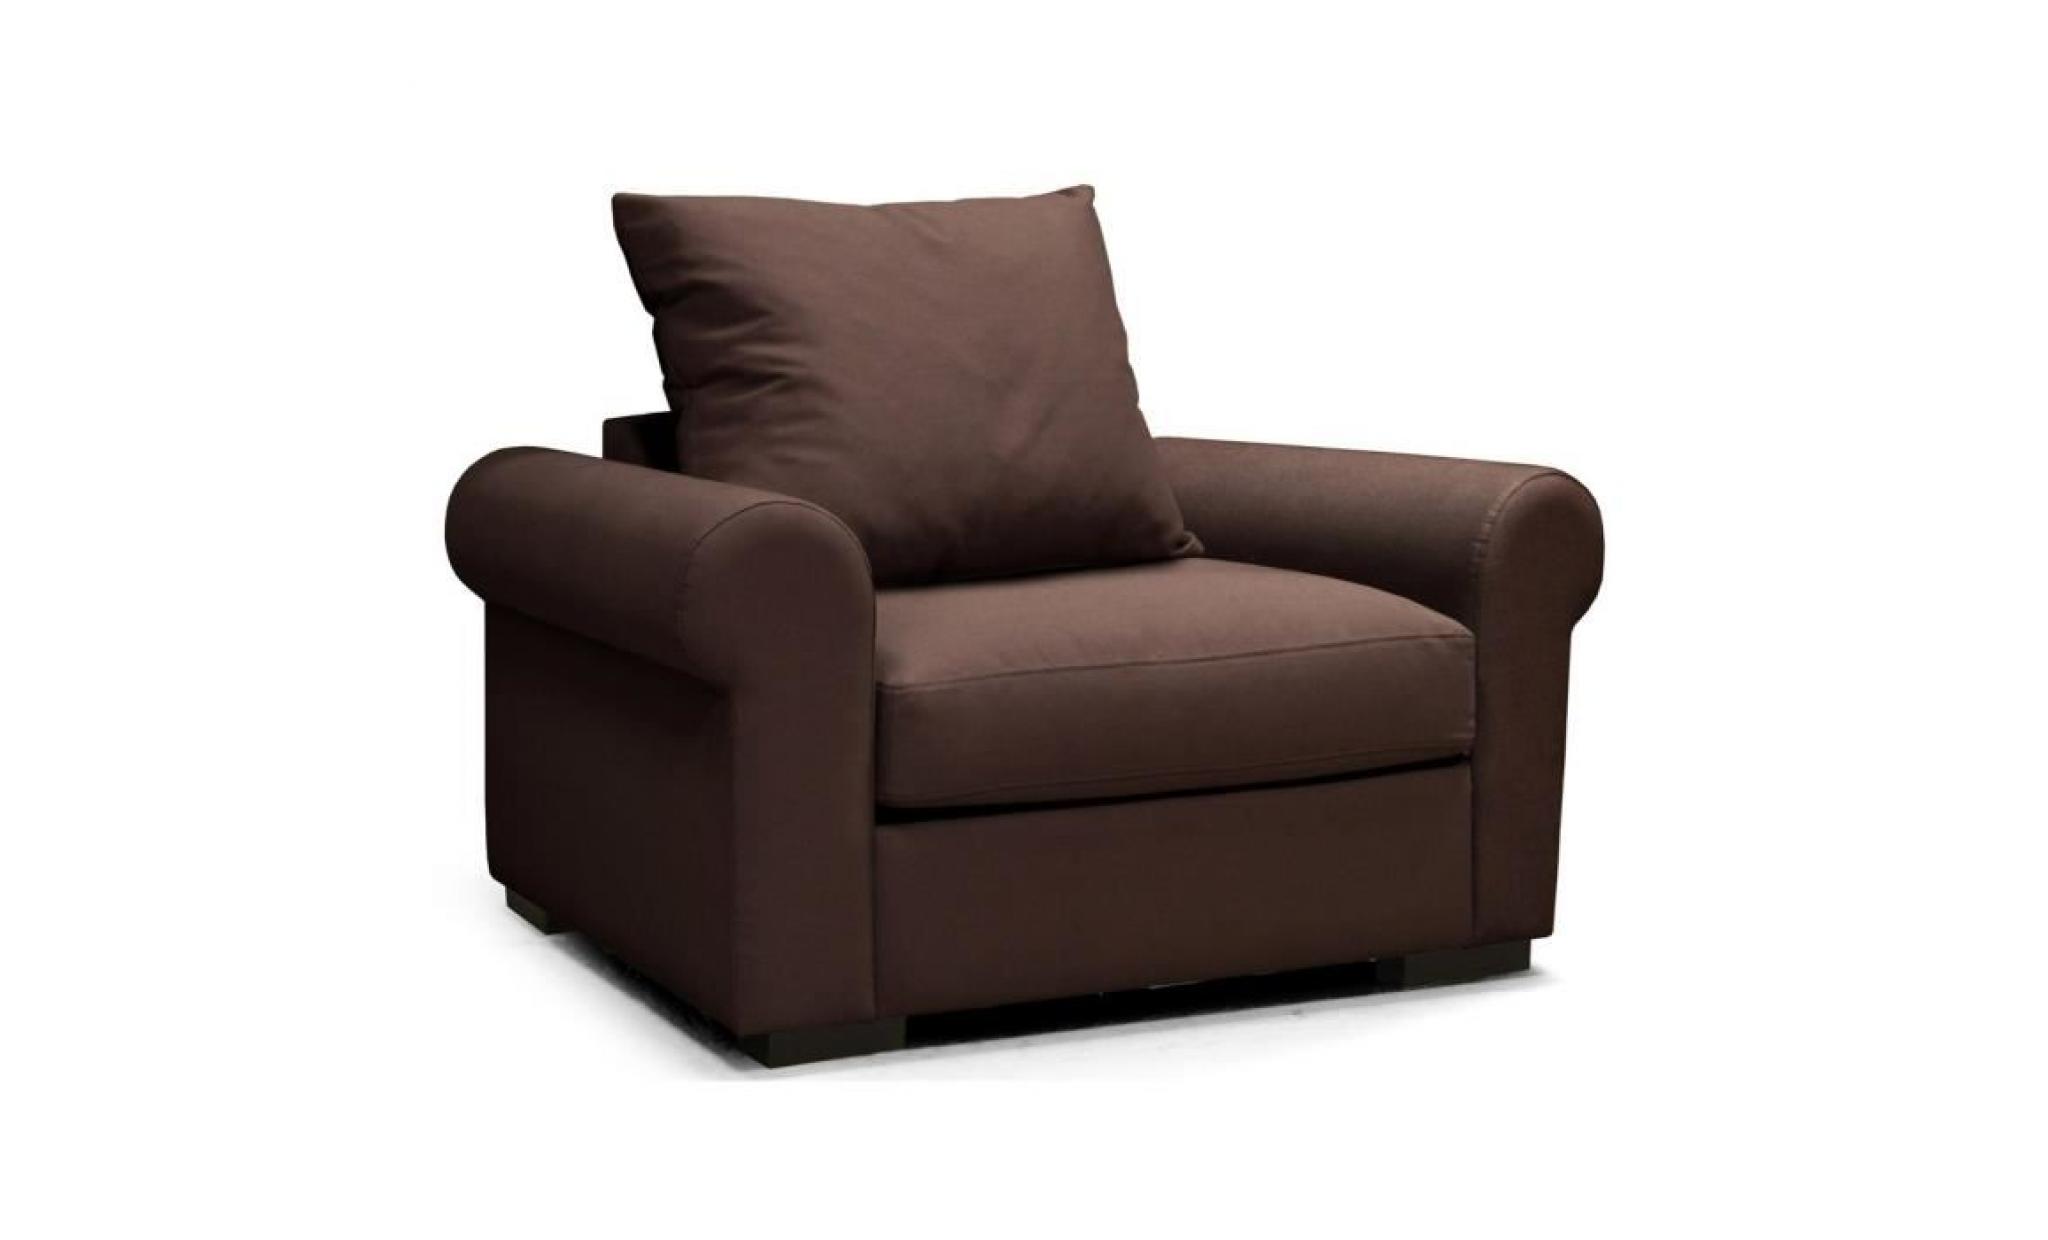 santory romantica fauteuil en tissu marron   classique   l 119 x p 96 cm